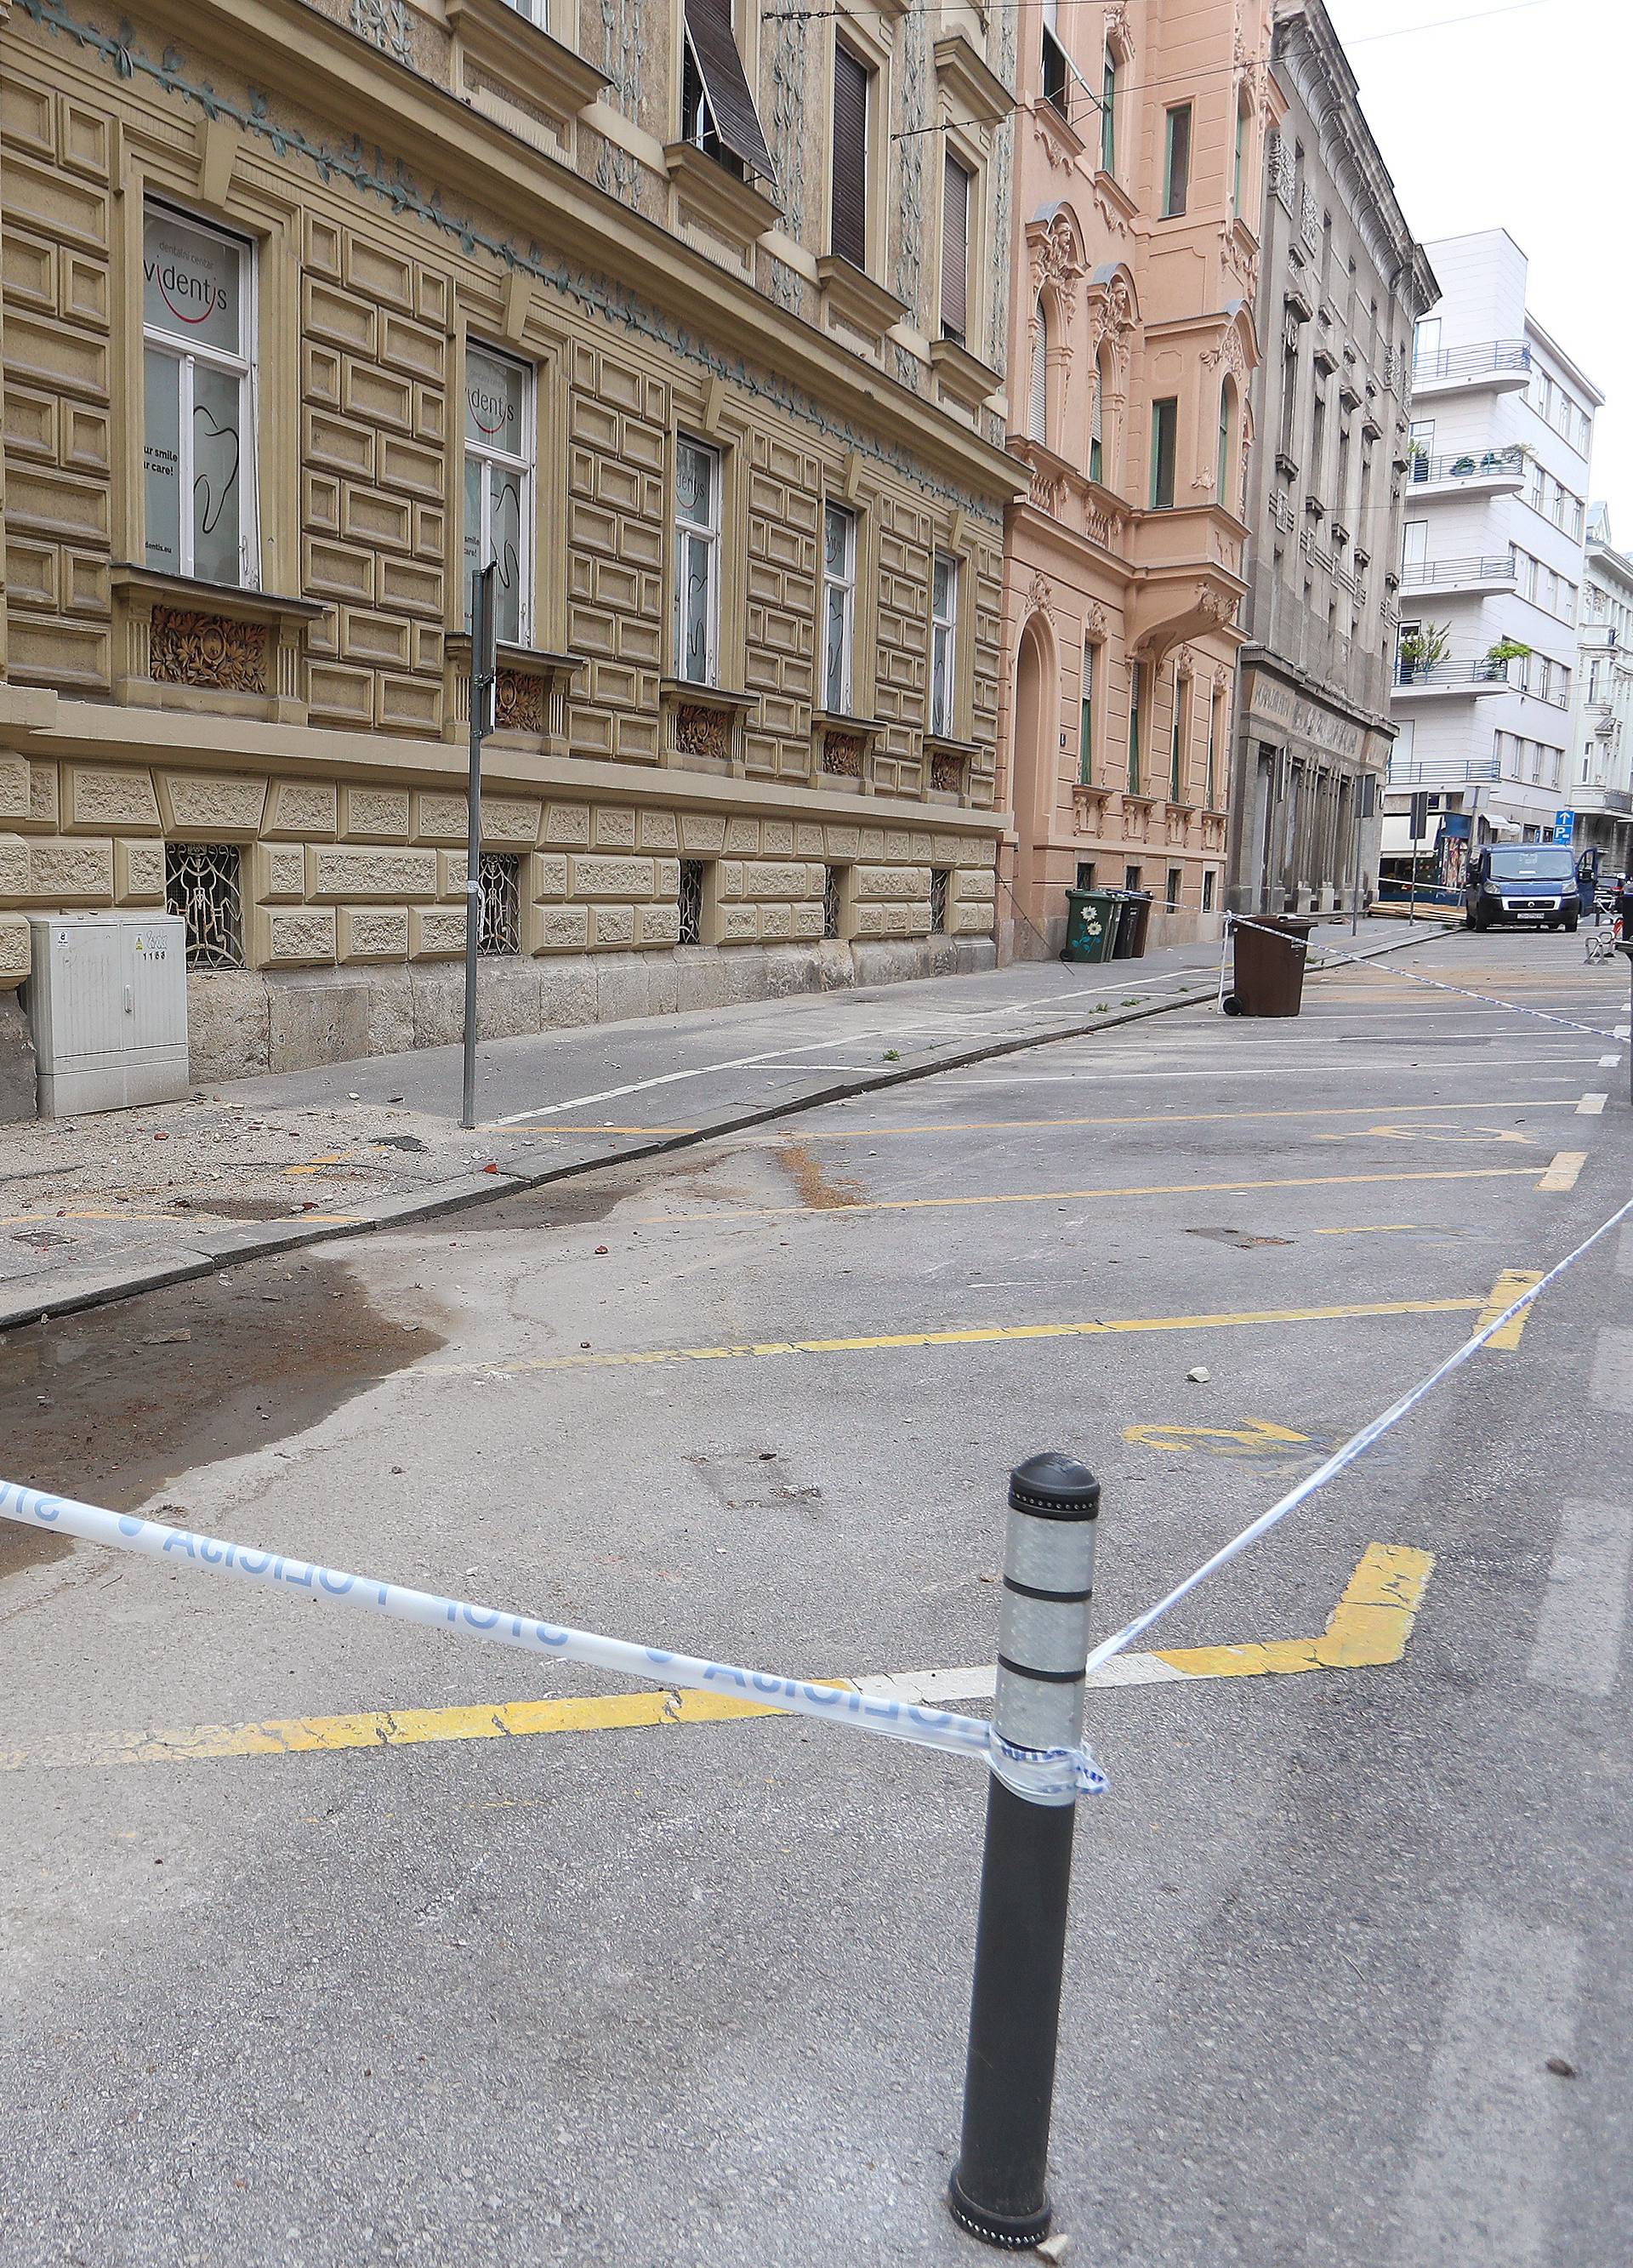 Zagreb: Prazna parkirališta u centru grada